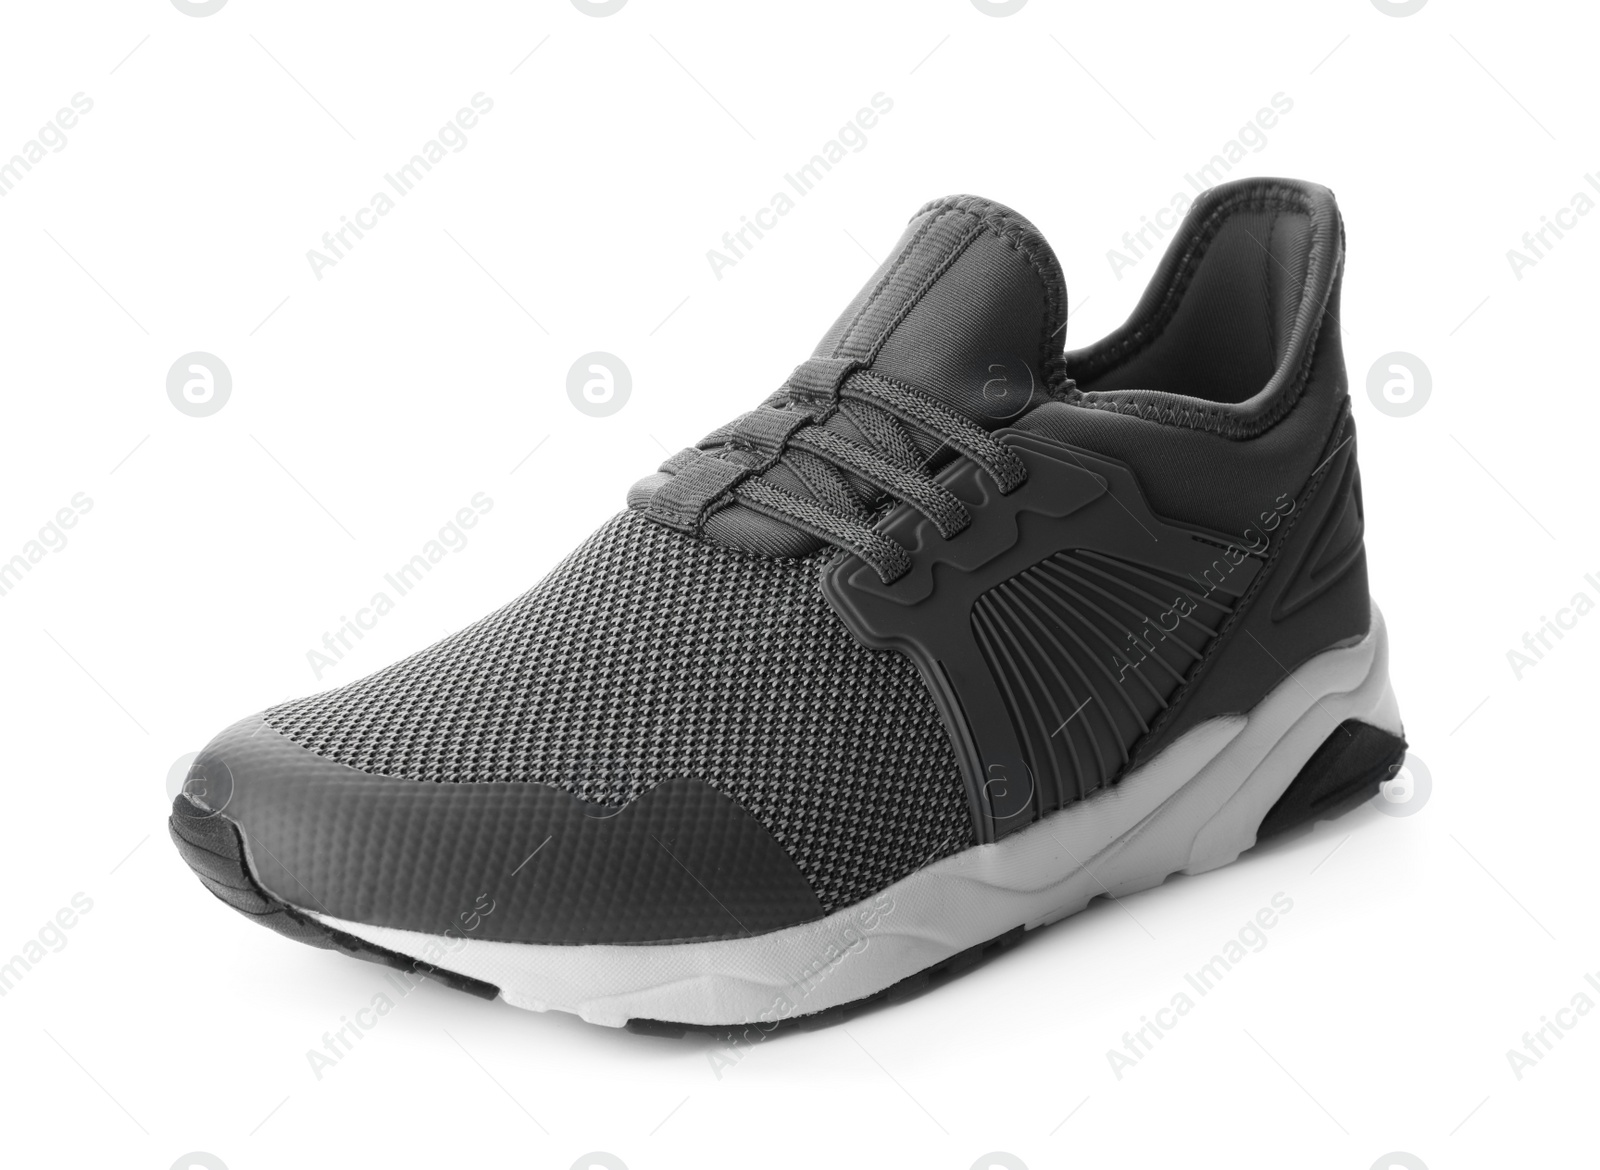 Photo of Stylish grey sports shoe isolated on white